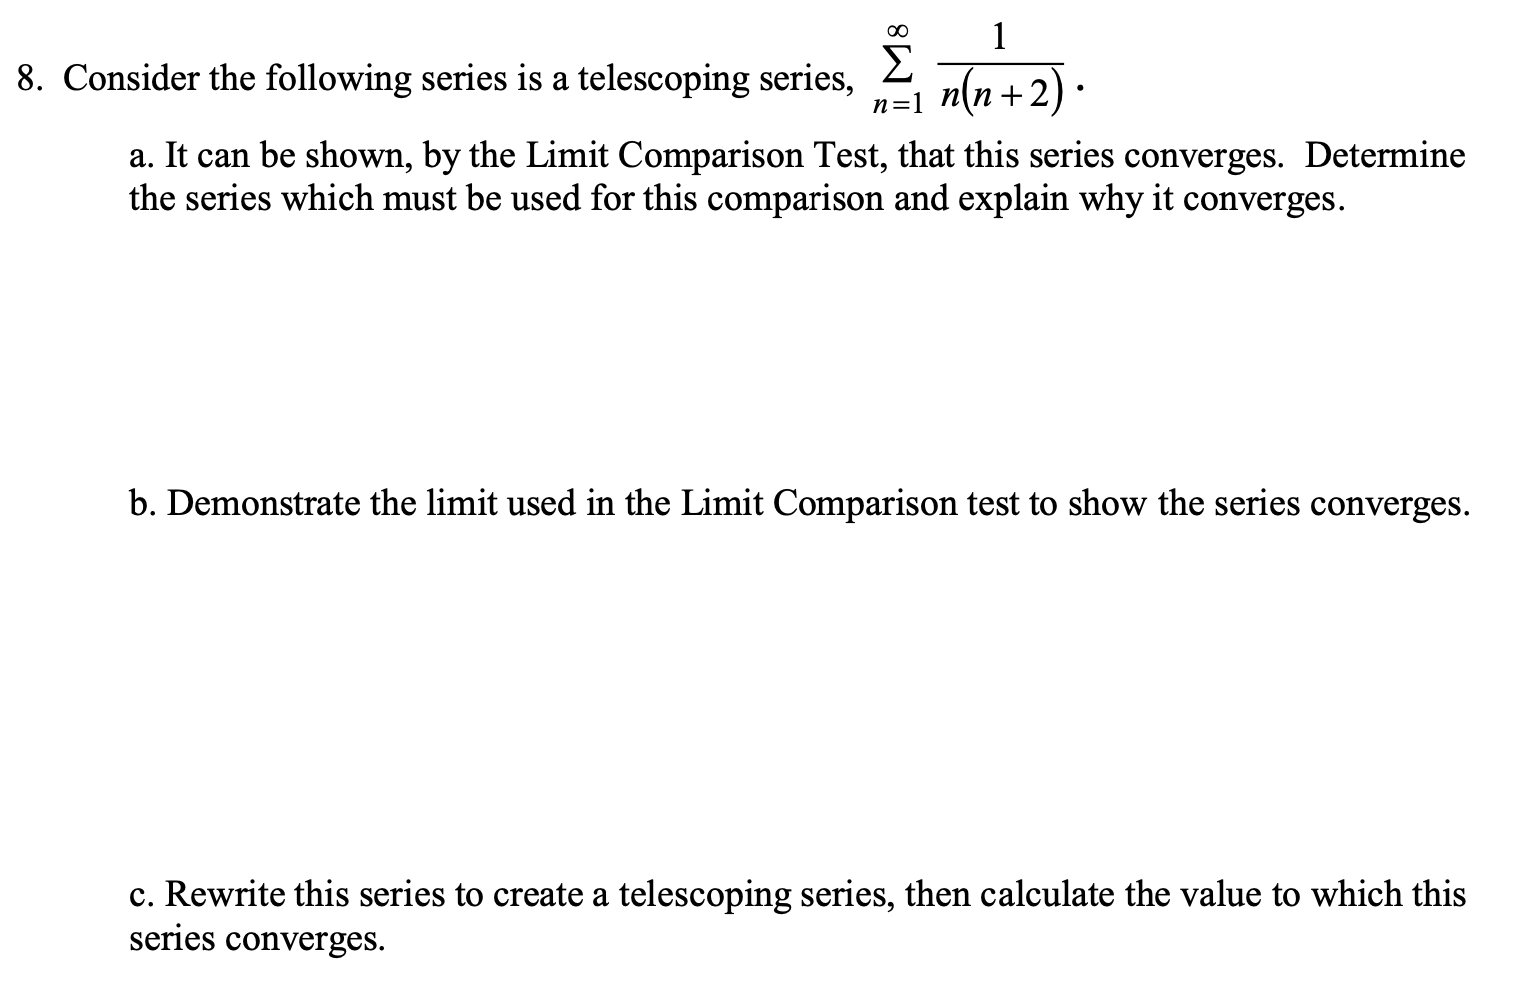 00
1
Σ
+2).
8. Consider the following series is a telescoping series,
n(n +
n=1
a. It can be shown, by the Limit Comparison Test, that this series converges. Determine
the series which must be used for this comparison and explain why it converges.
b. Demonstrate the limit used in the Limit Comparison test to show the series converges.
